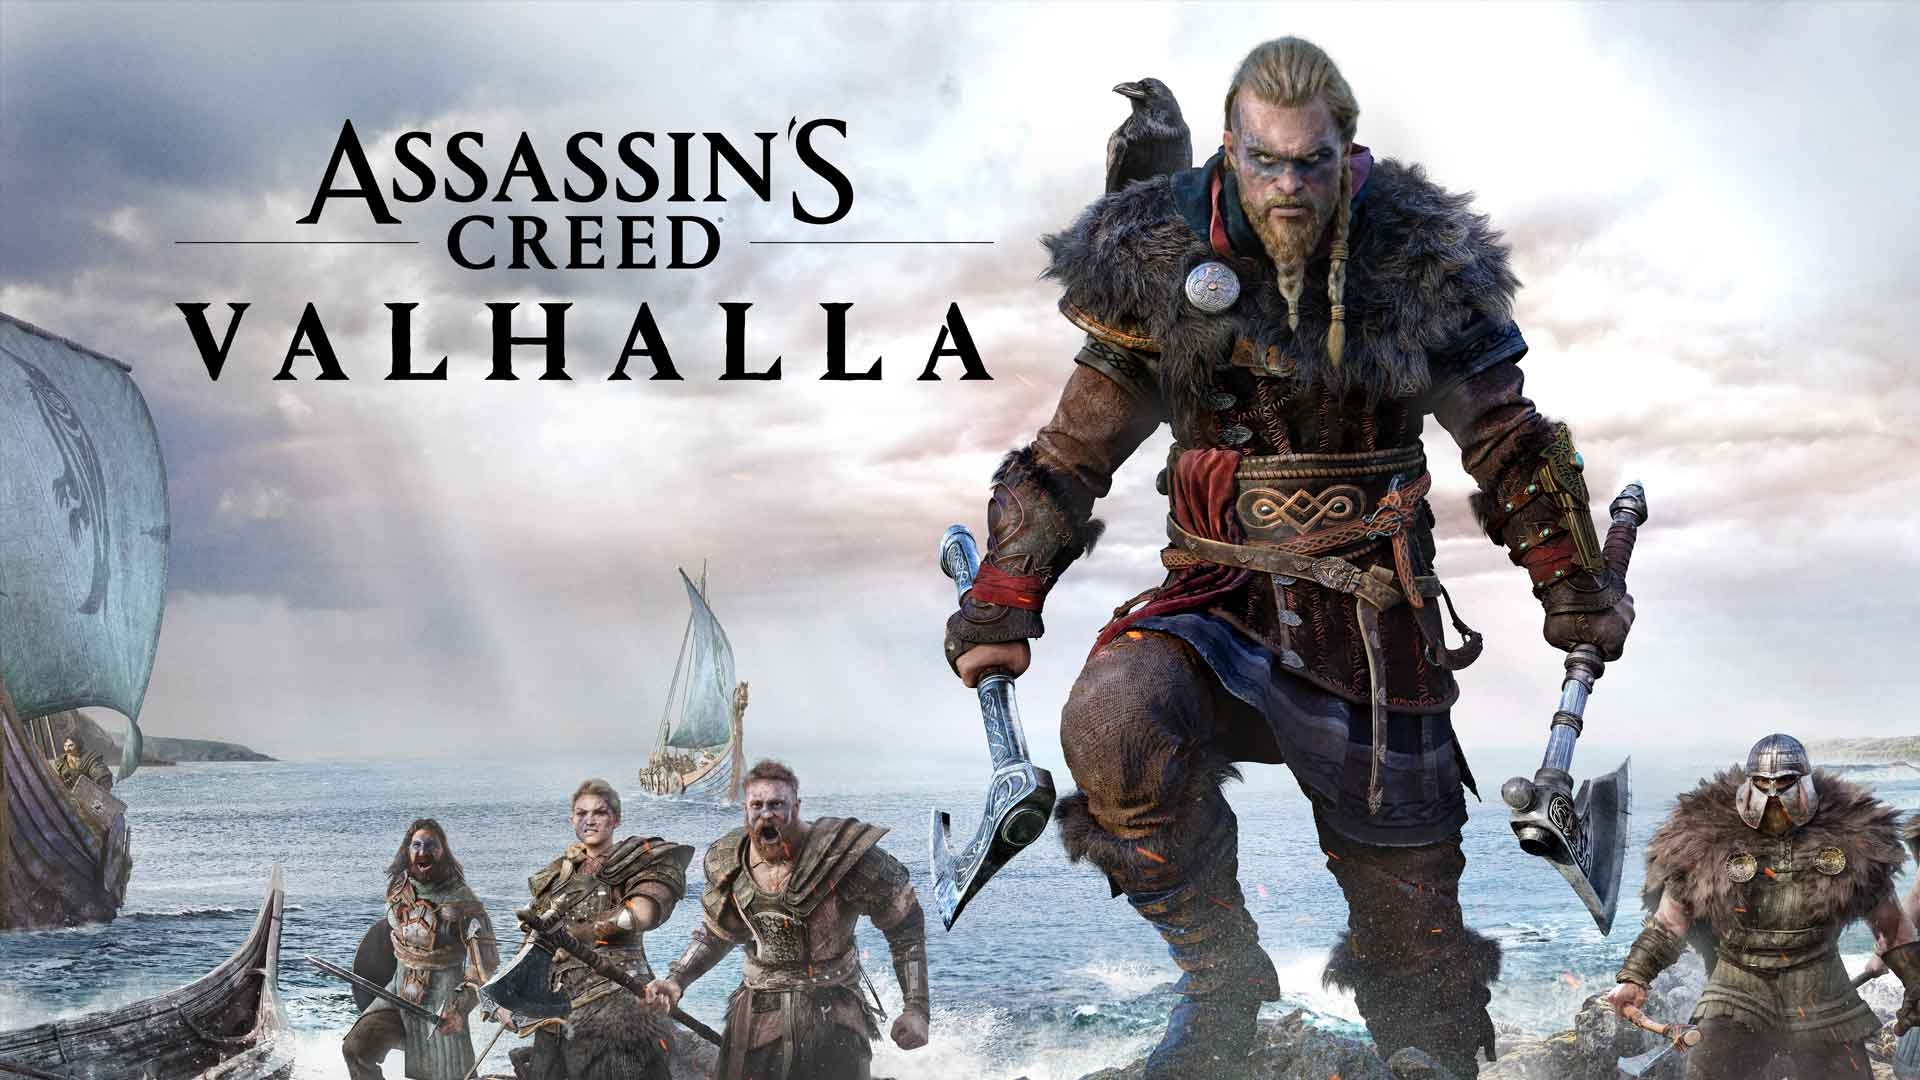 Der zweite Blockbuster Titel unter den Game Pass Einträgen ist Assassin's Creed Valhalla @ Ubisoft